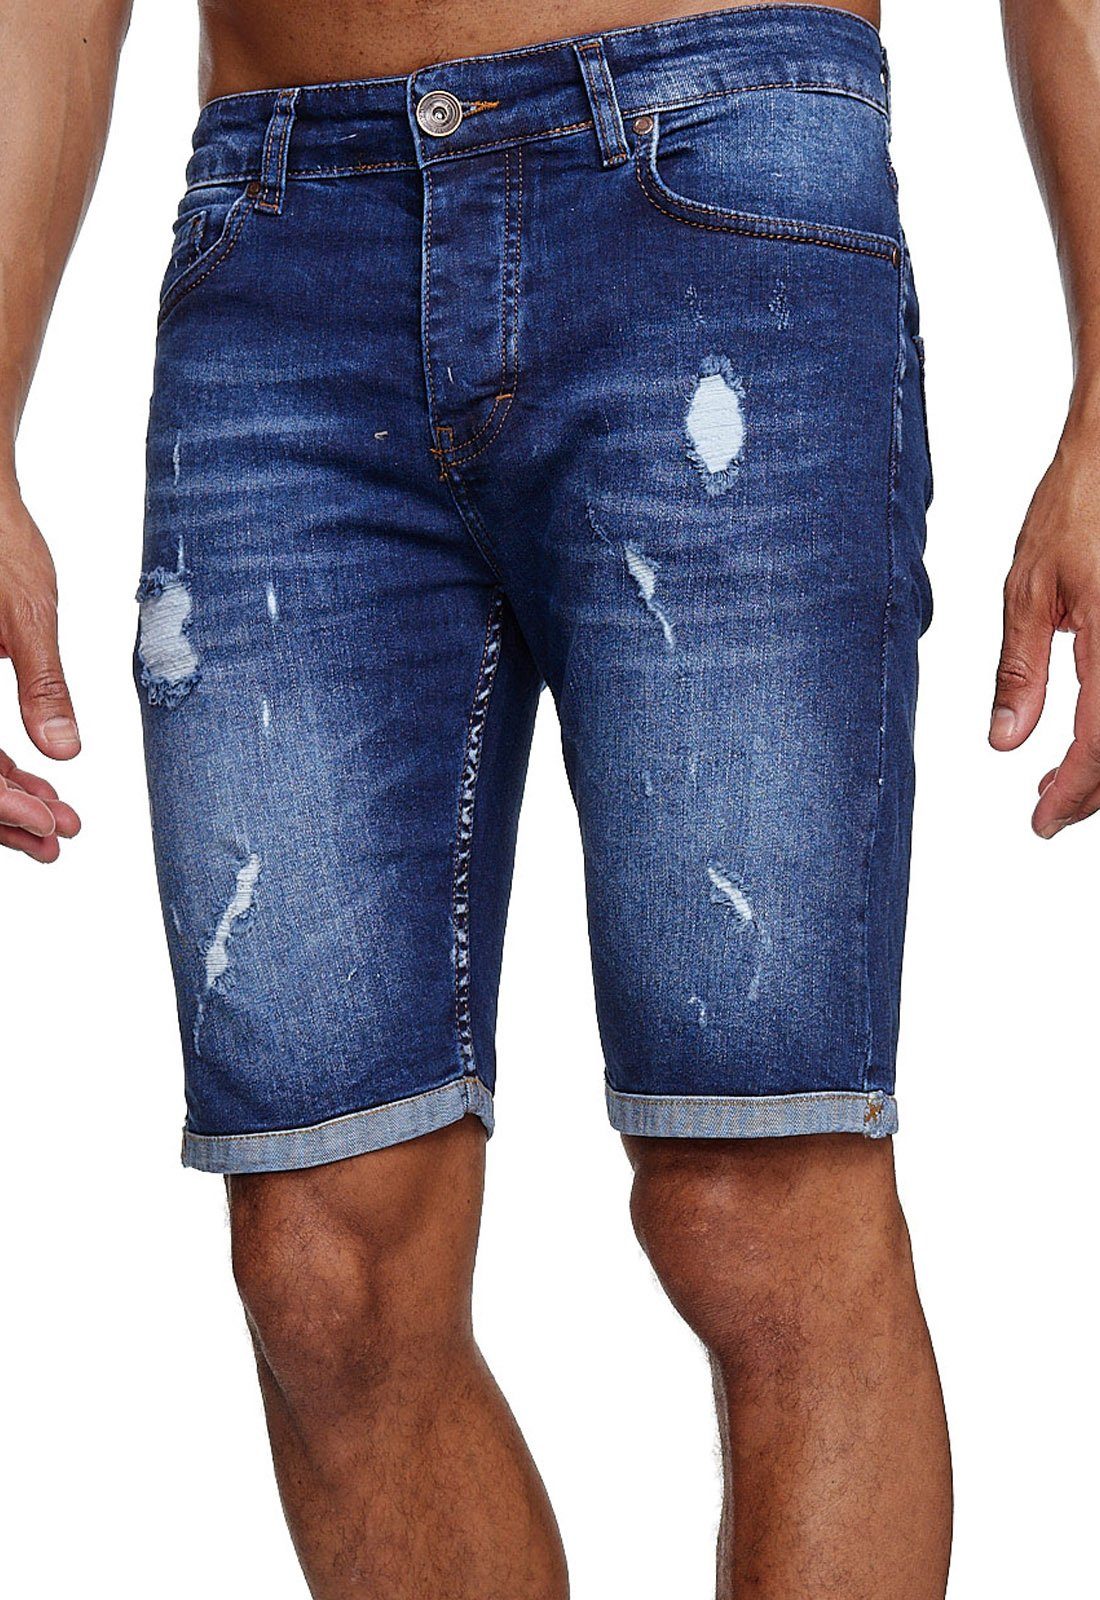 Reslad Jeansshorts Reslad Jeans Destroyed Herren Look Hosen l Sommer blau Jeansbermudas Kurze Destroyed Jeans-Hose Stretch Shorts Used